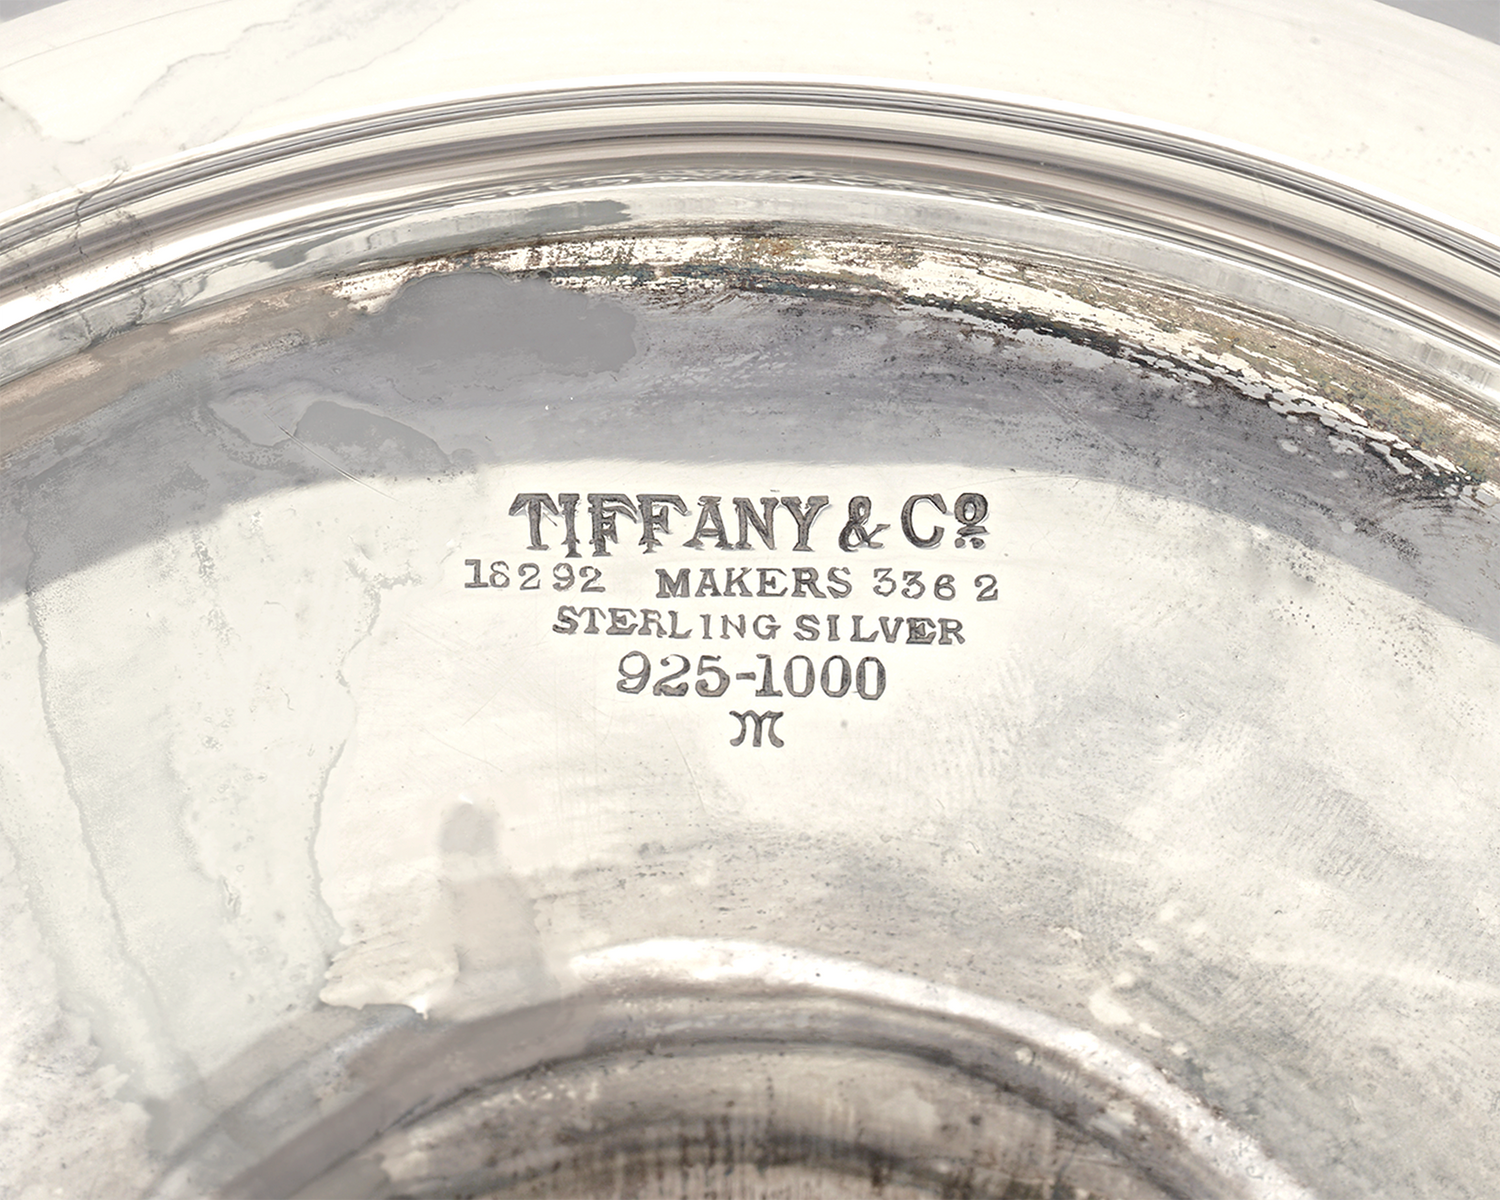 Tiffany & Co. Silver Trophy